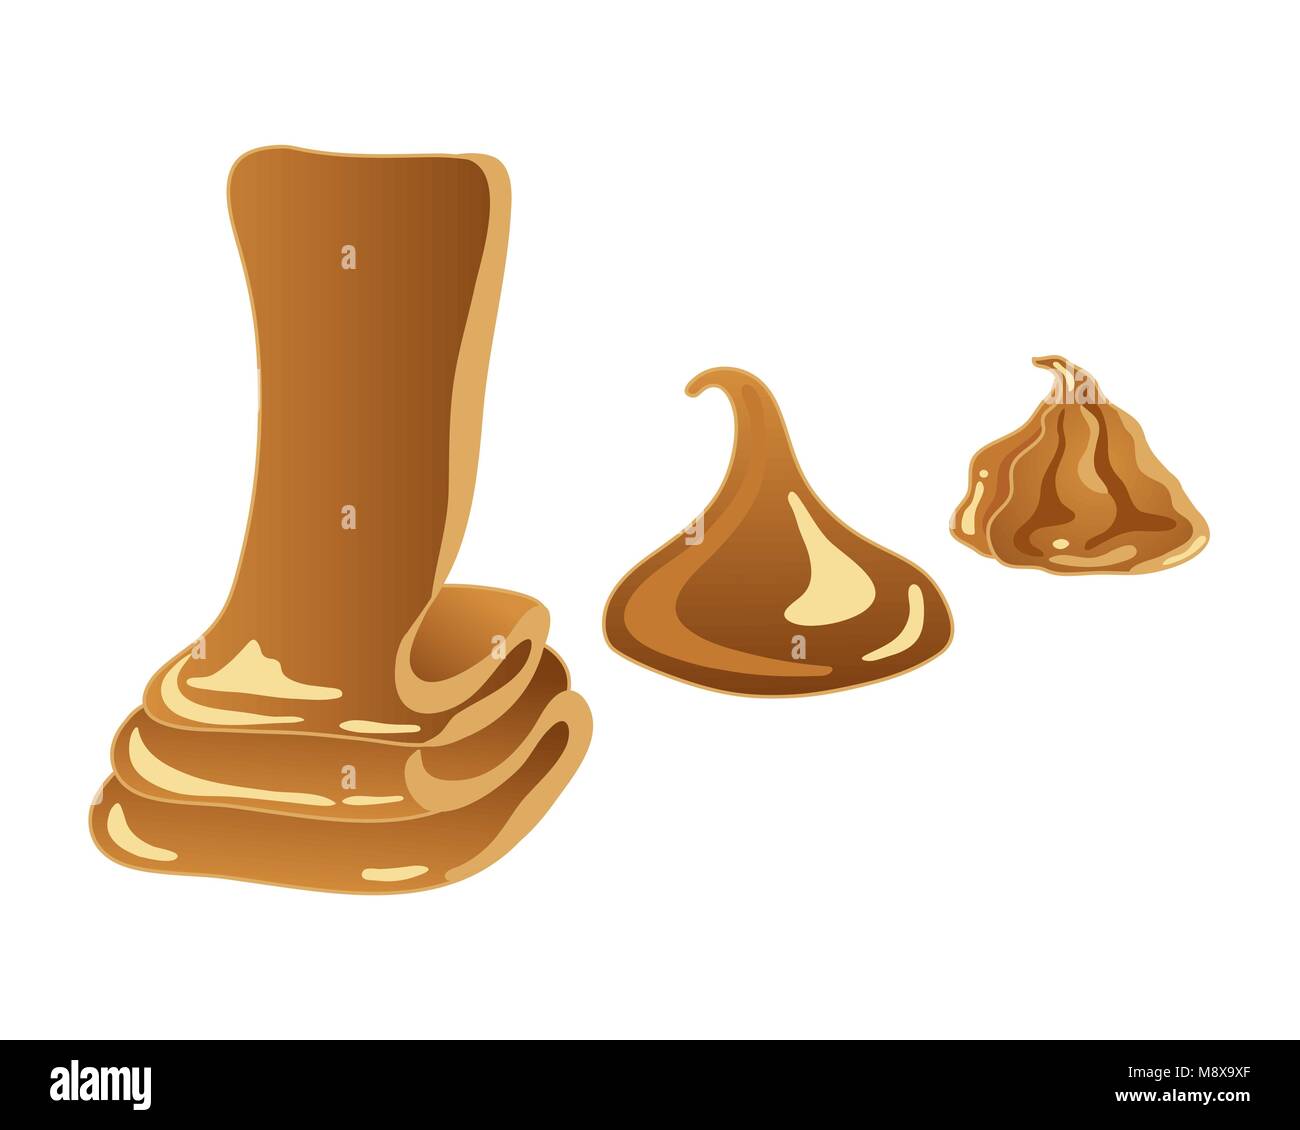 Un vecteur illustration en format eps 10 doux de caramel doré dans trois différentes formes sur un fond blanc Illustration de Vecteur